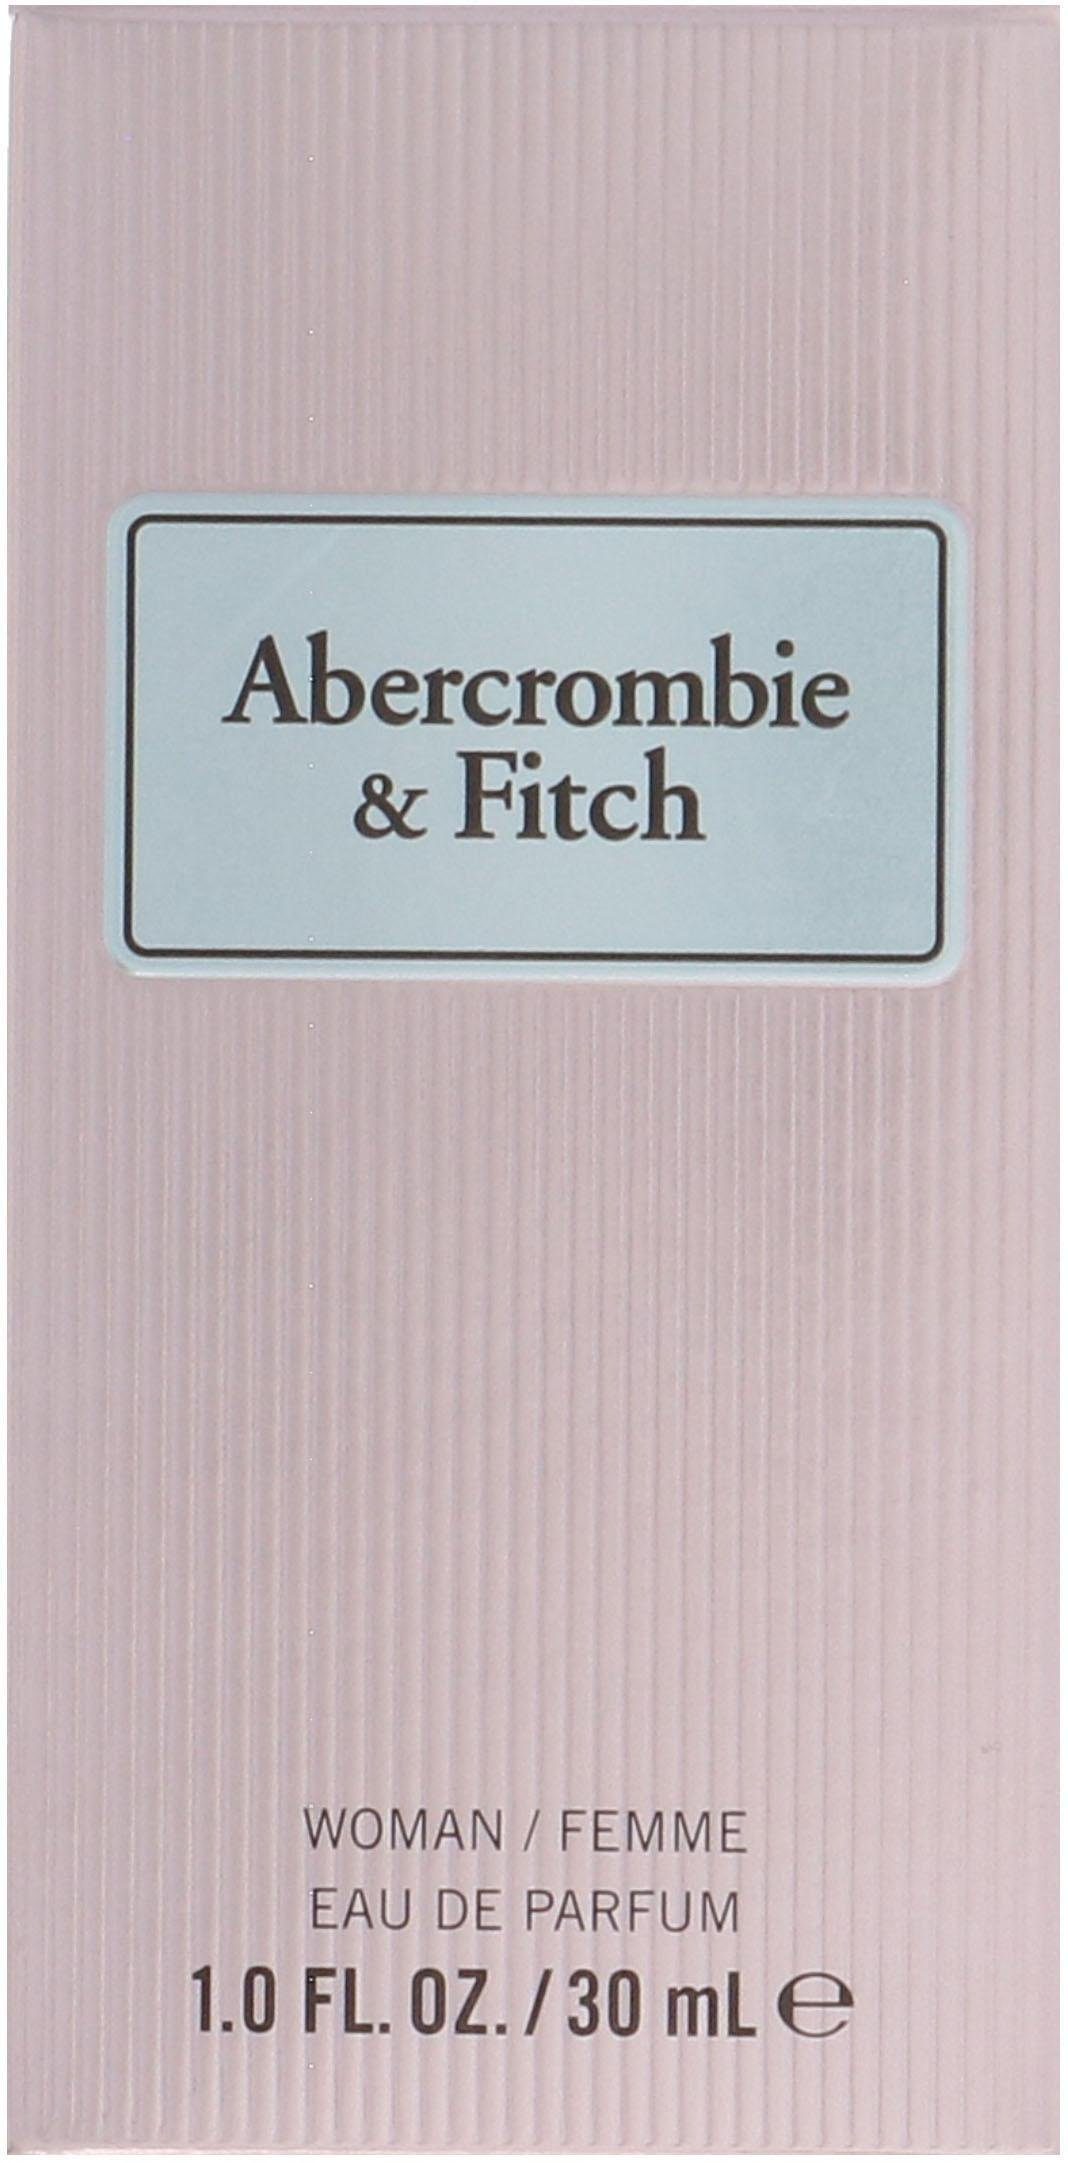 Parfum First Eau Instinct Abercrombie Fitch Women & de